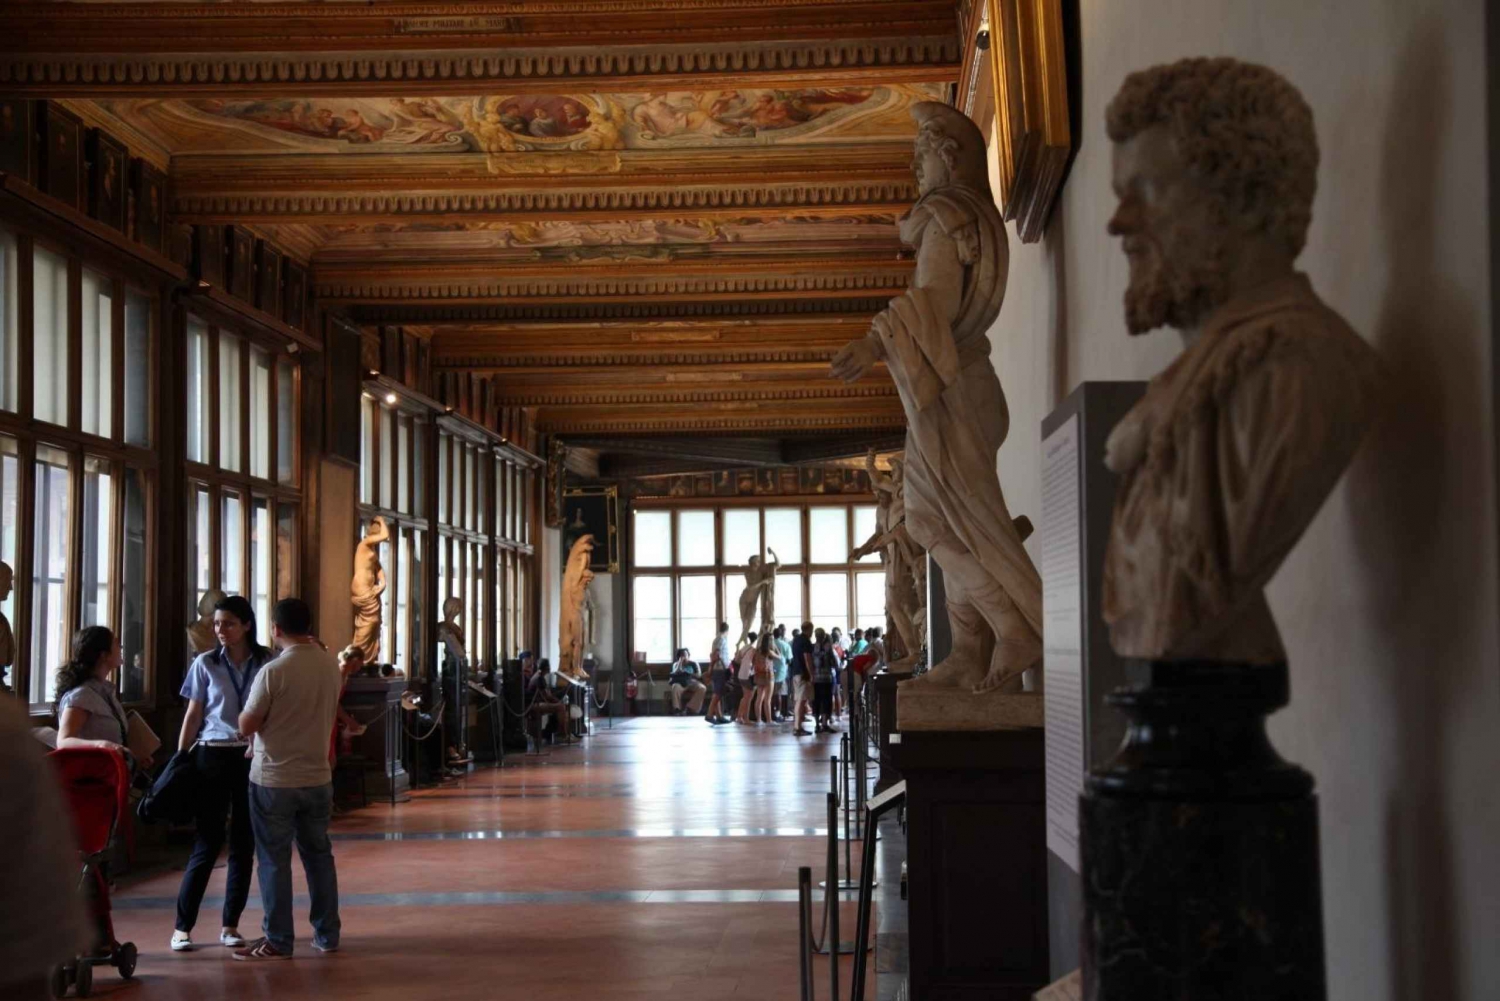 Zarezerwowane bilety wstępu do Galerii Uffizi z pominięciem kolejki